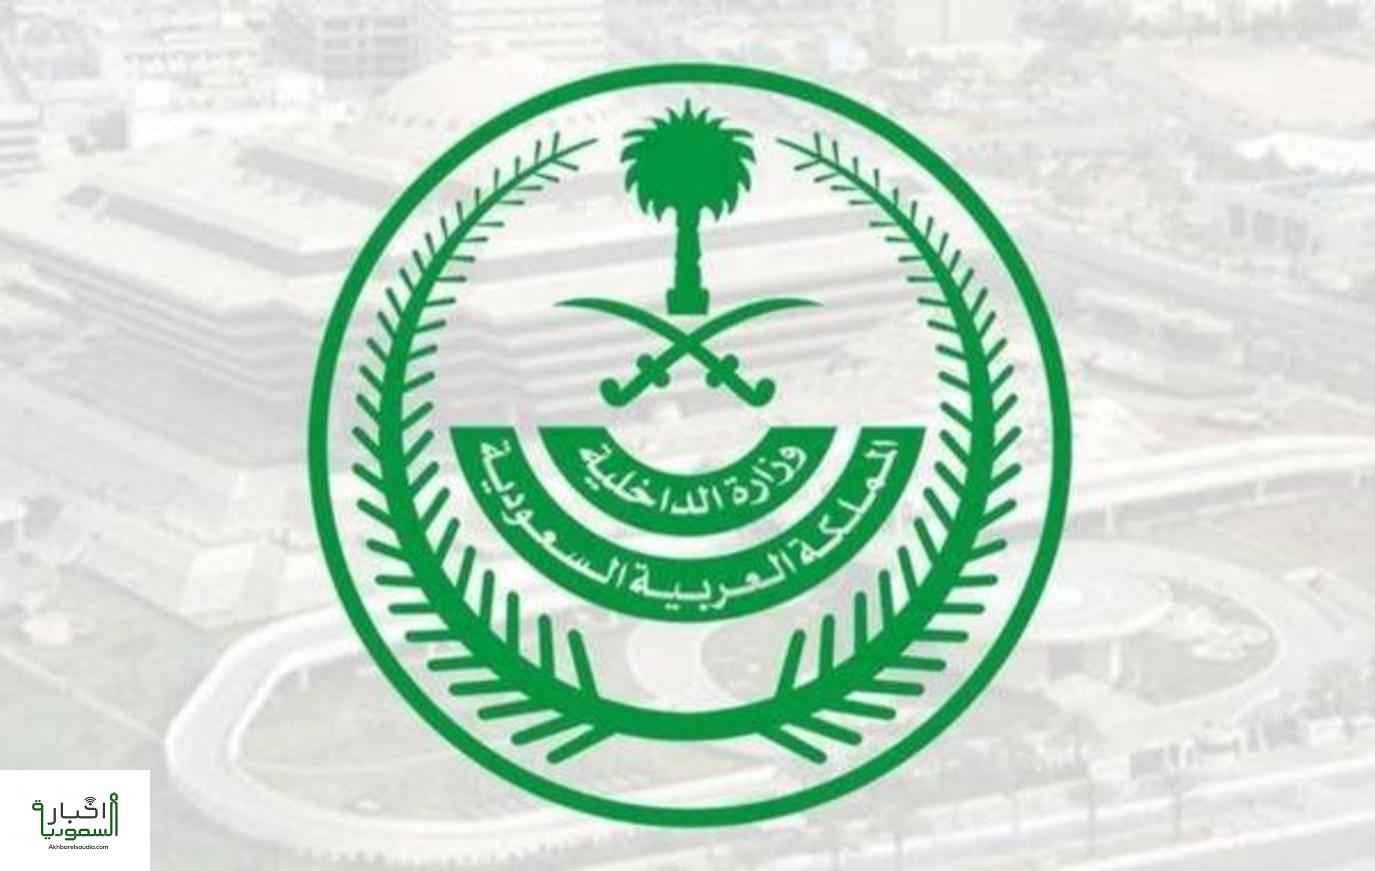 وزارة الداخلية: تنفيذ حكم القتل بعدد ممن اعتنقوا الفكر الضال